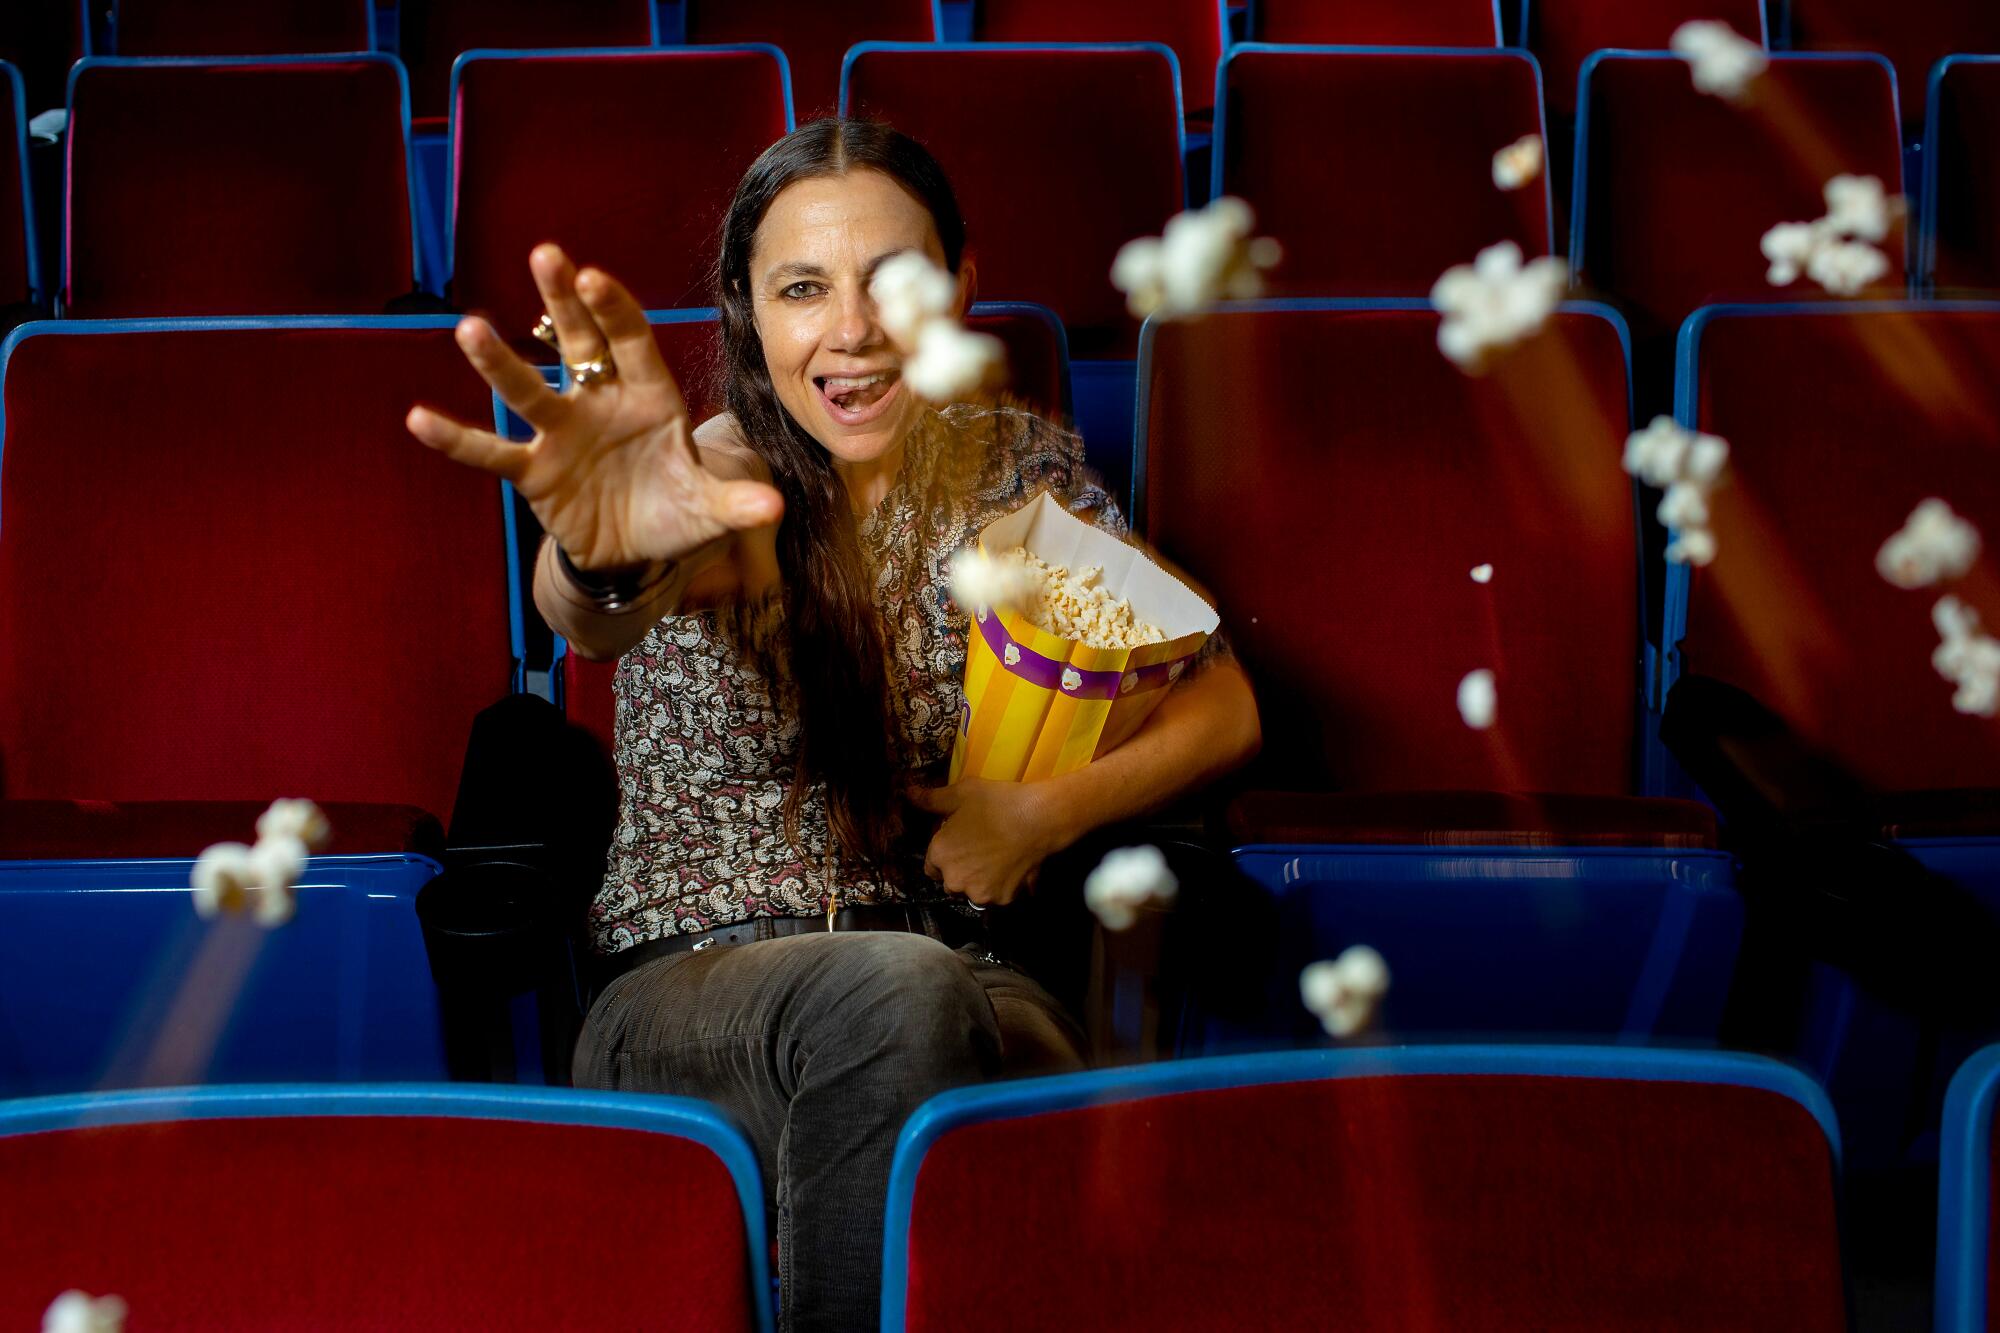 Actress and writer  Justine Batemen throws popcorn